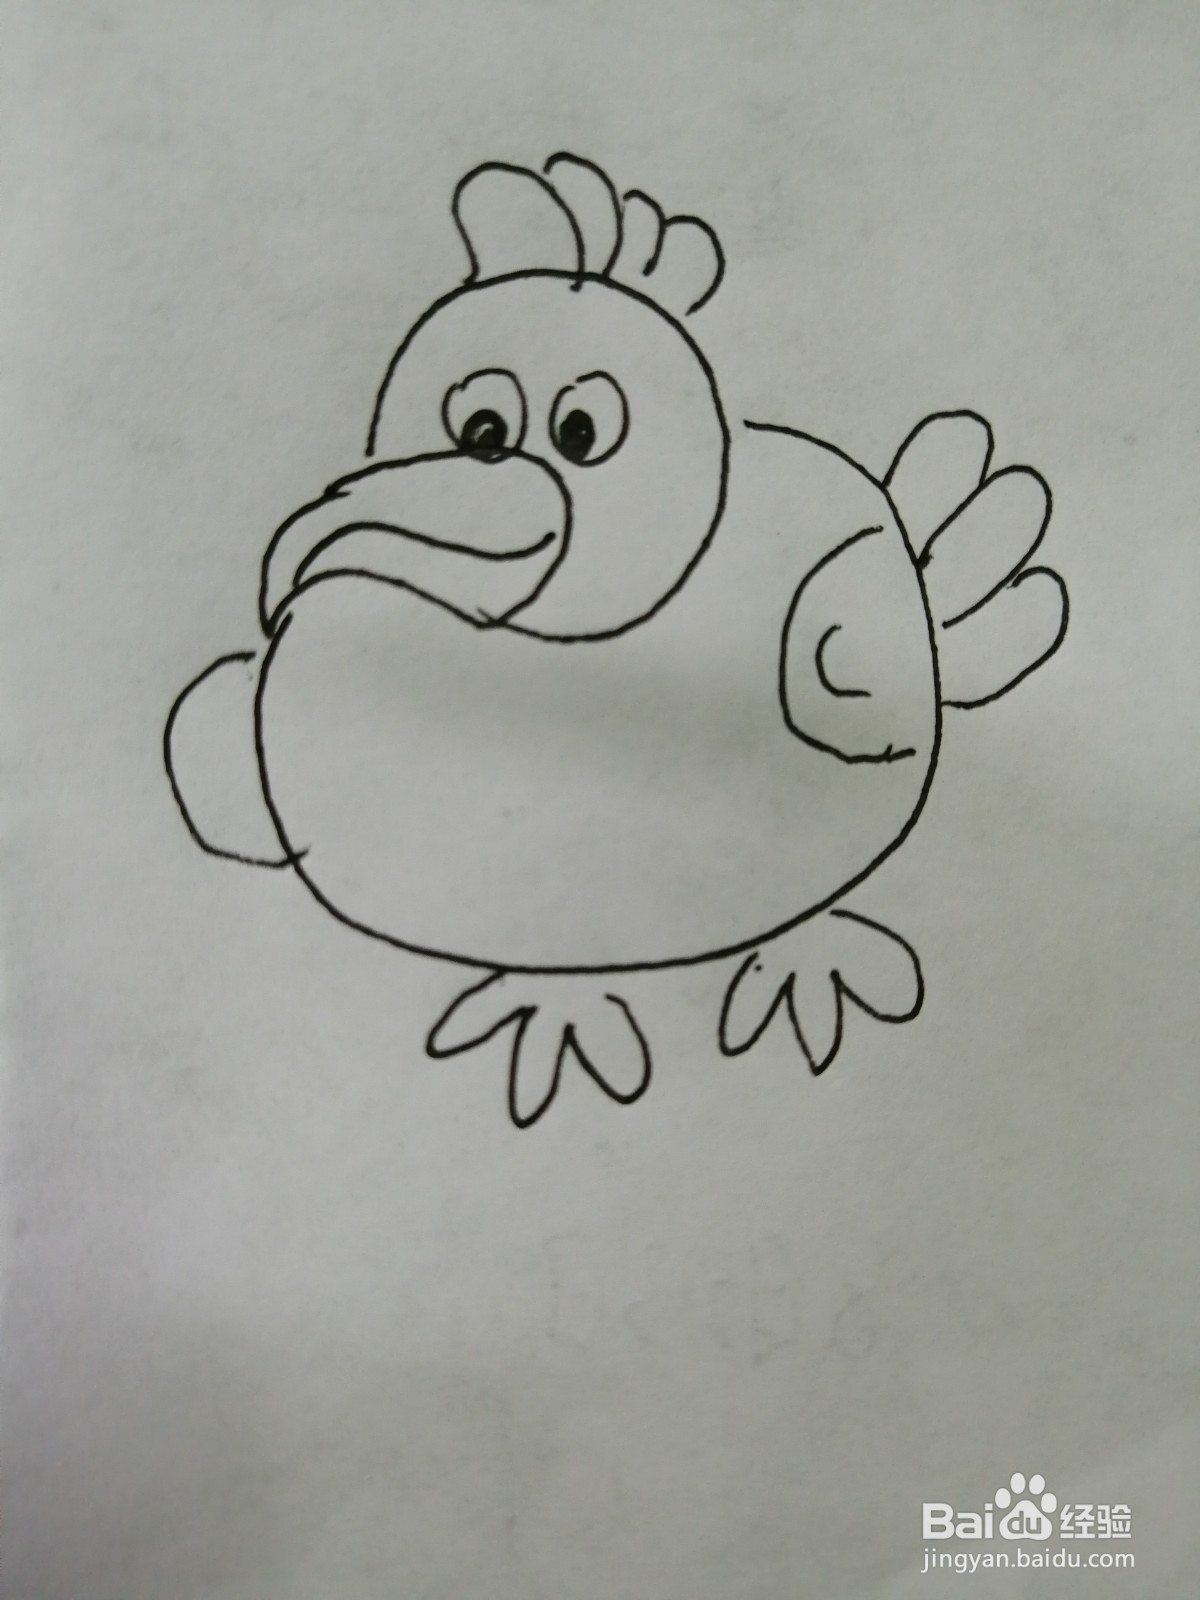 <b>简笔画可爱的火鸡怎么画</b>